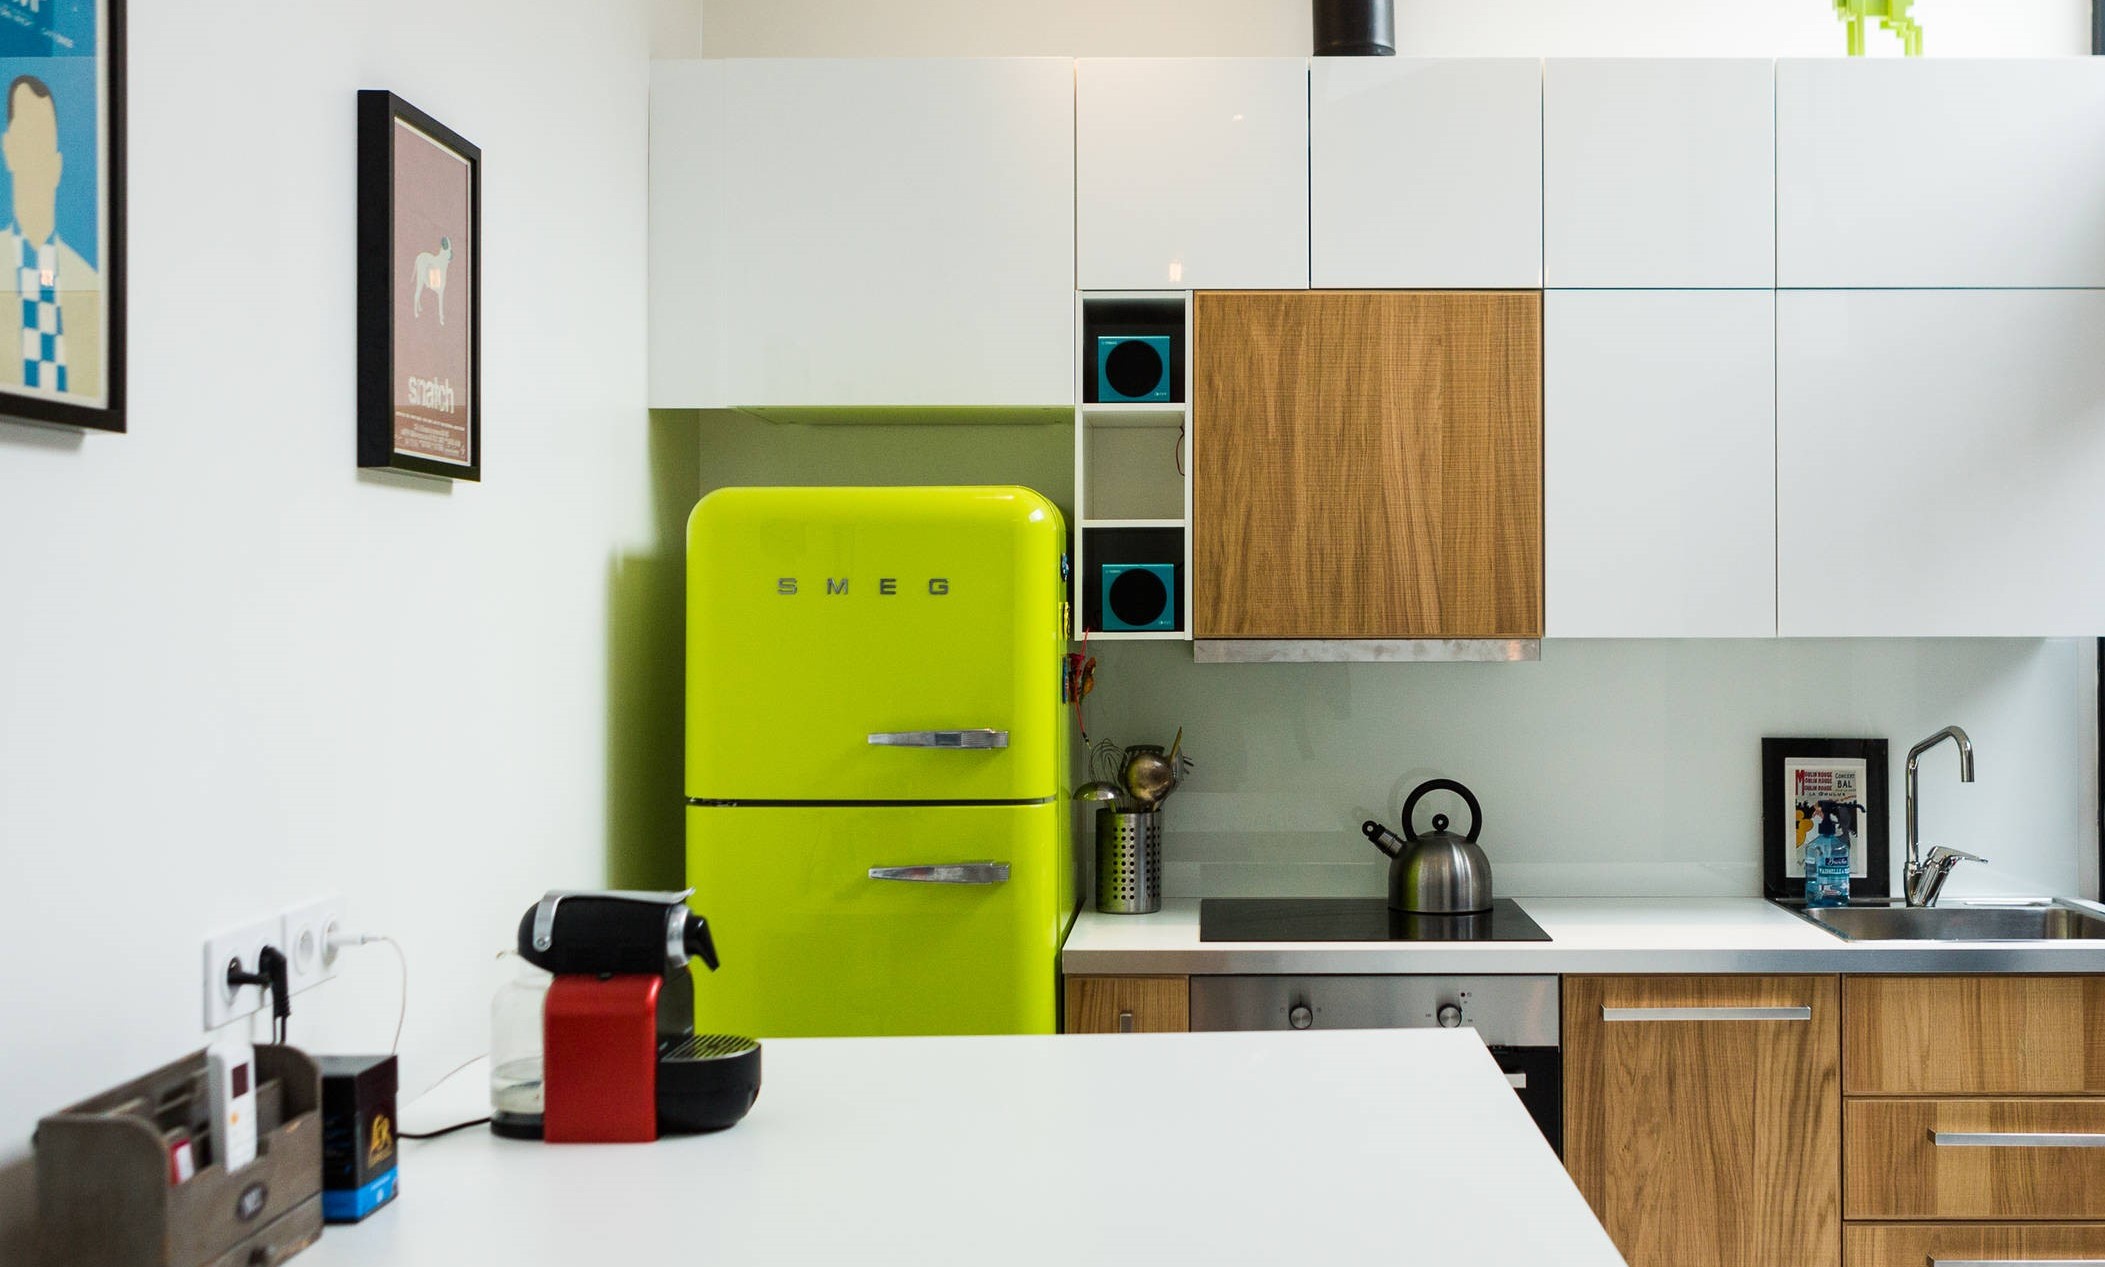 Угловая кухня с холодильником 37 фото варианты дизайна маленьких кухонь с холодильником в углу по диагонали Малогабаритные кухни с холодильником у двери